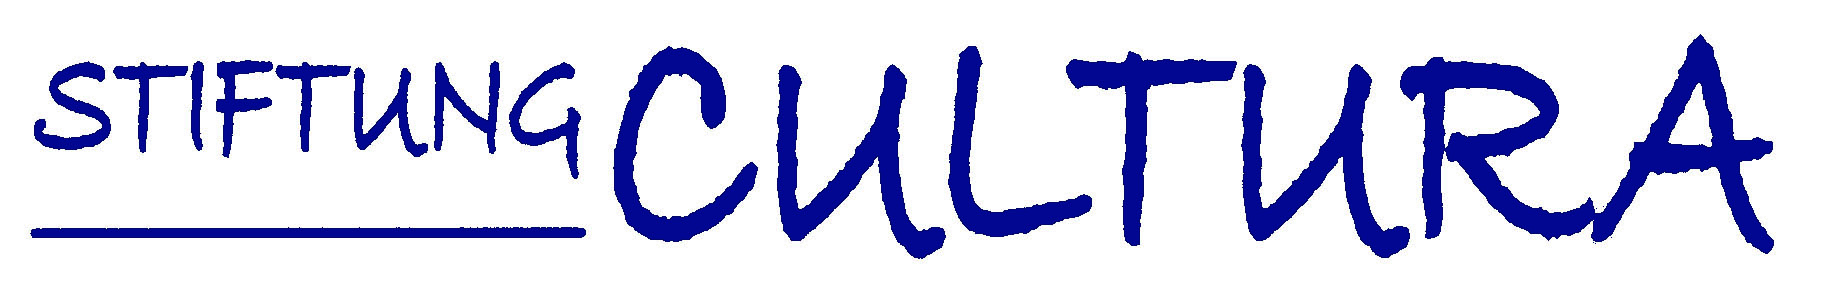 Logo-CULTURAblau.jpg